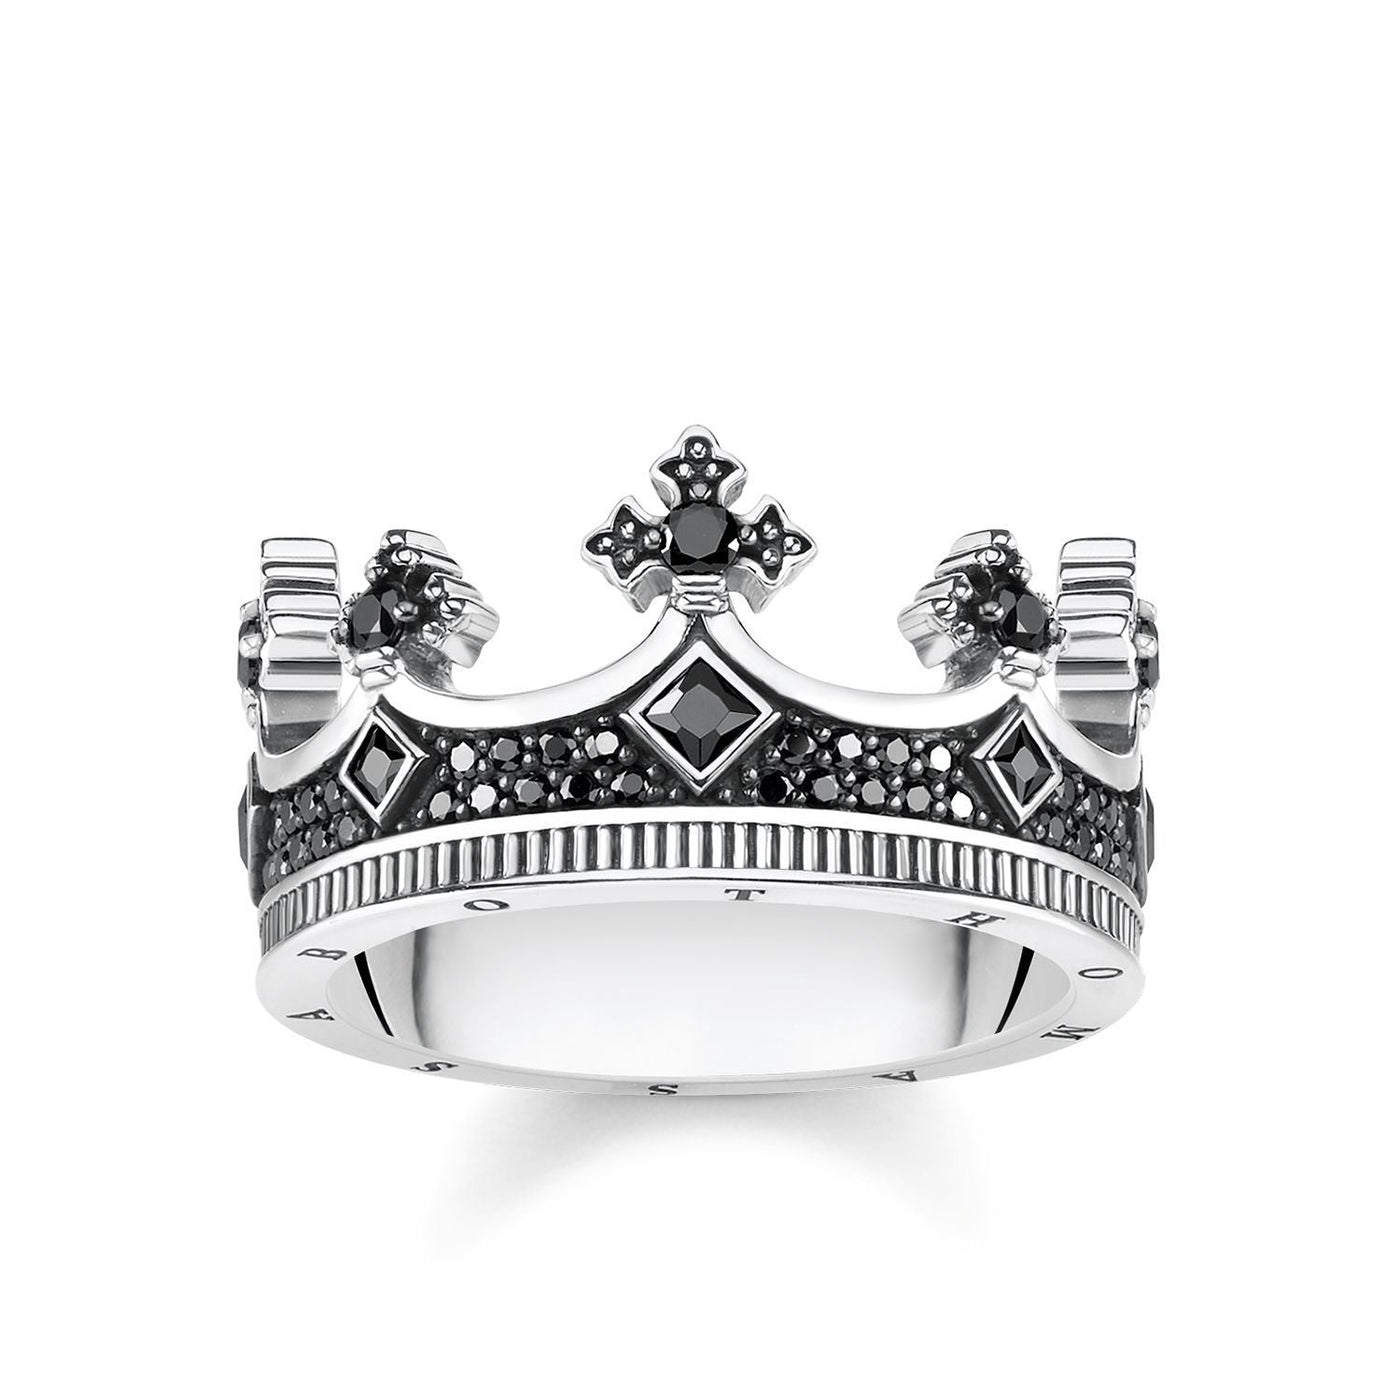 Thomas Sabo Crown Ring